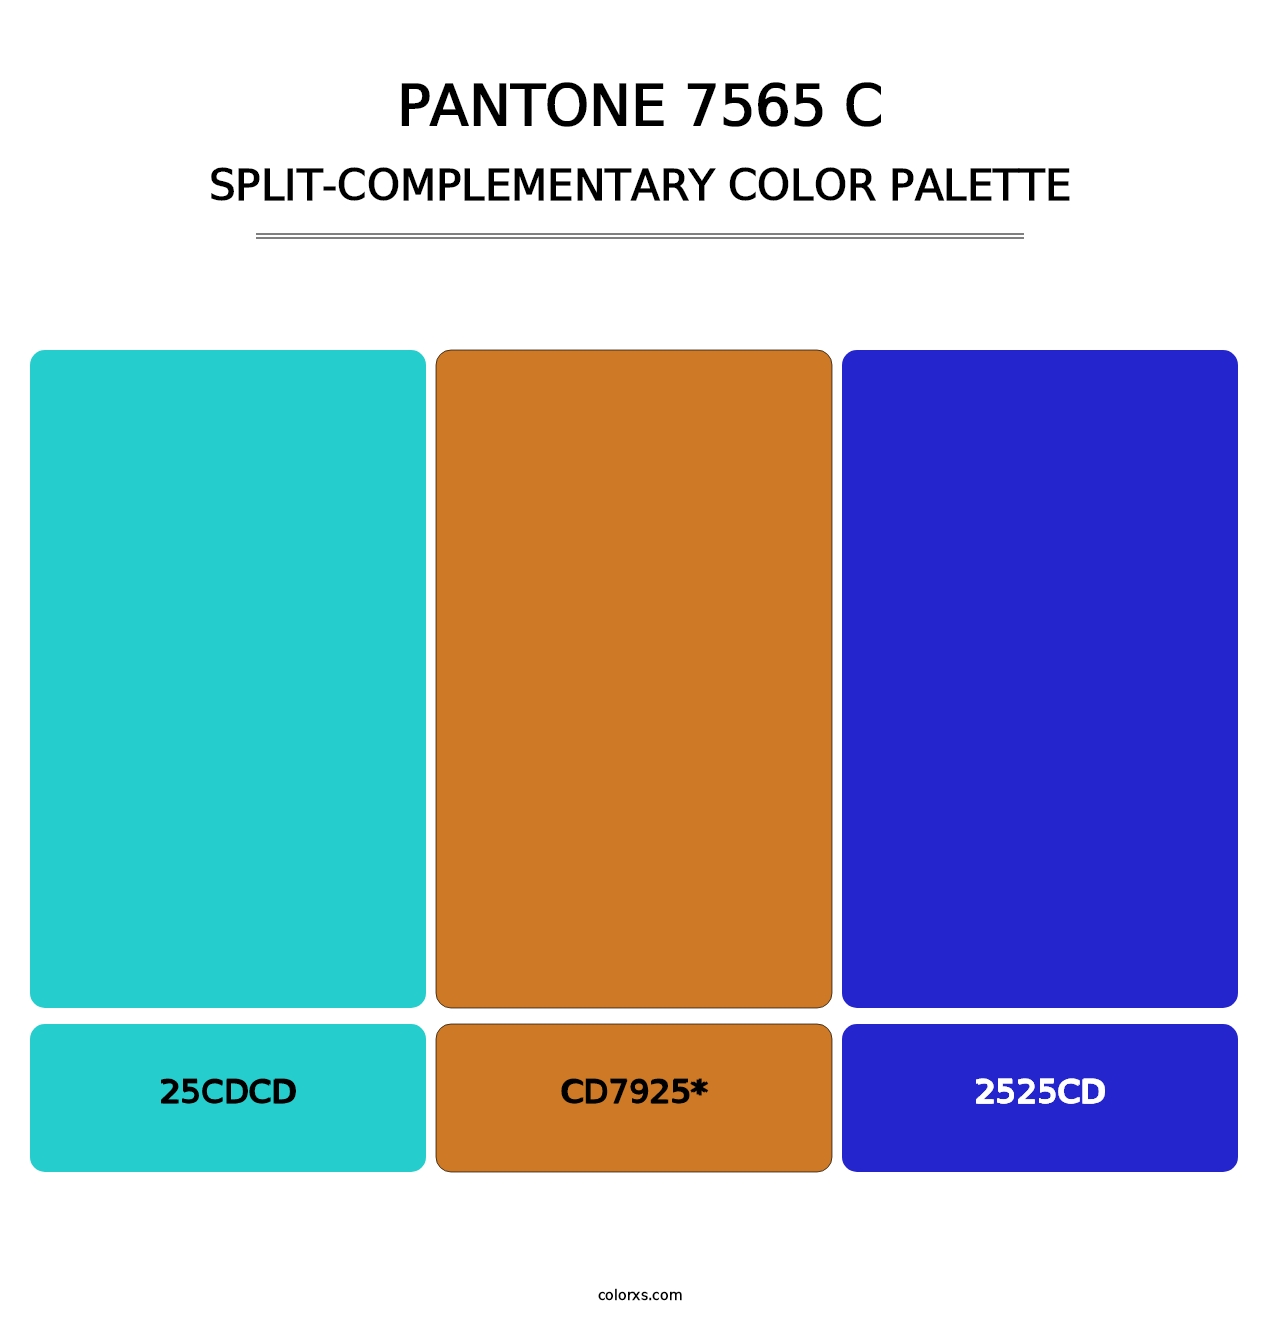 PANTONE 7565 C - Split-Complementary Color Palette